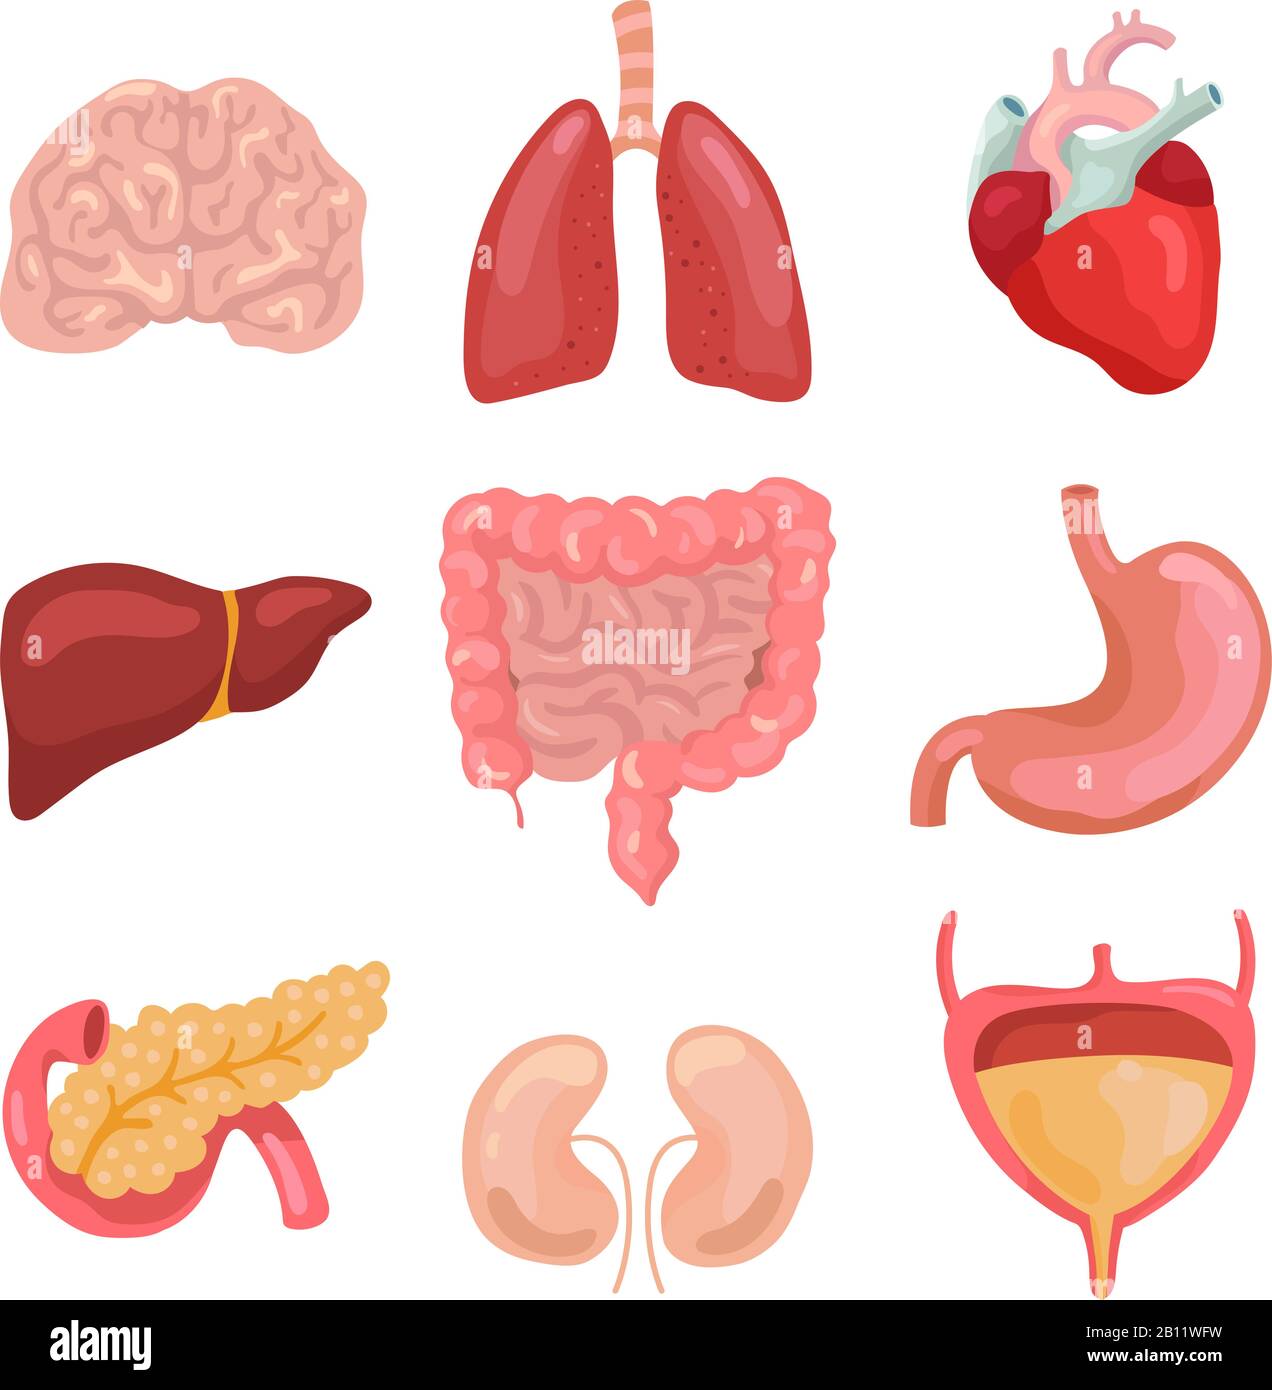 Cartoon menschliche Körperorgane. Gesunder Verdauungsapparat, Kreislaufstörungen. Organanatomiesymbole für den Vektorsatz für medizinische Diagramme Stock Vektor